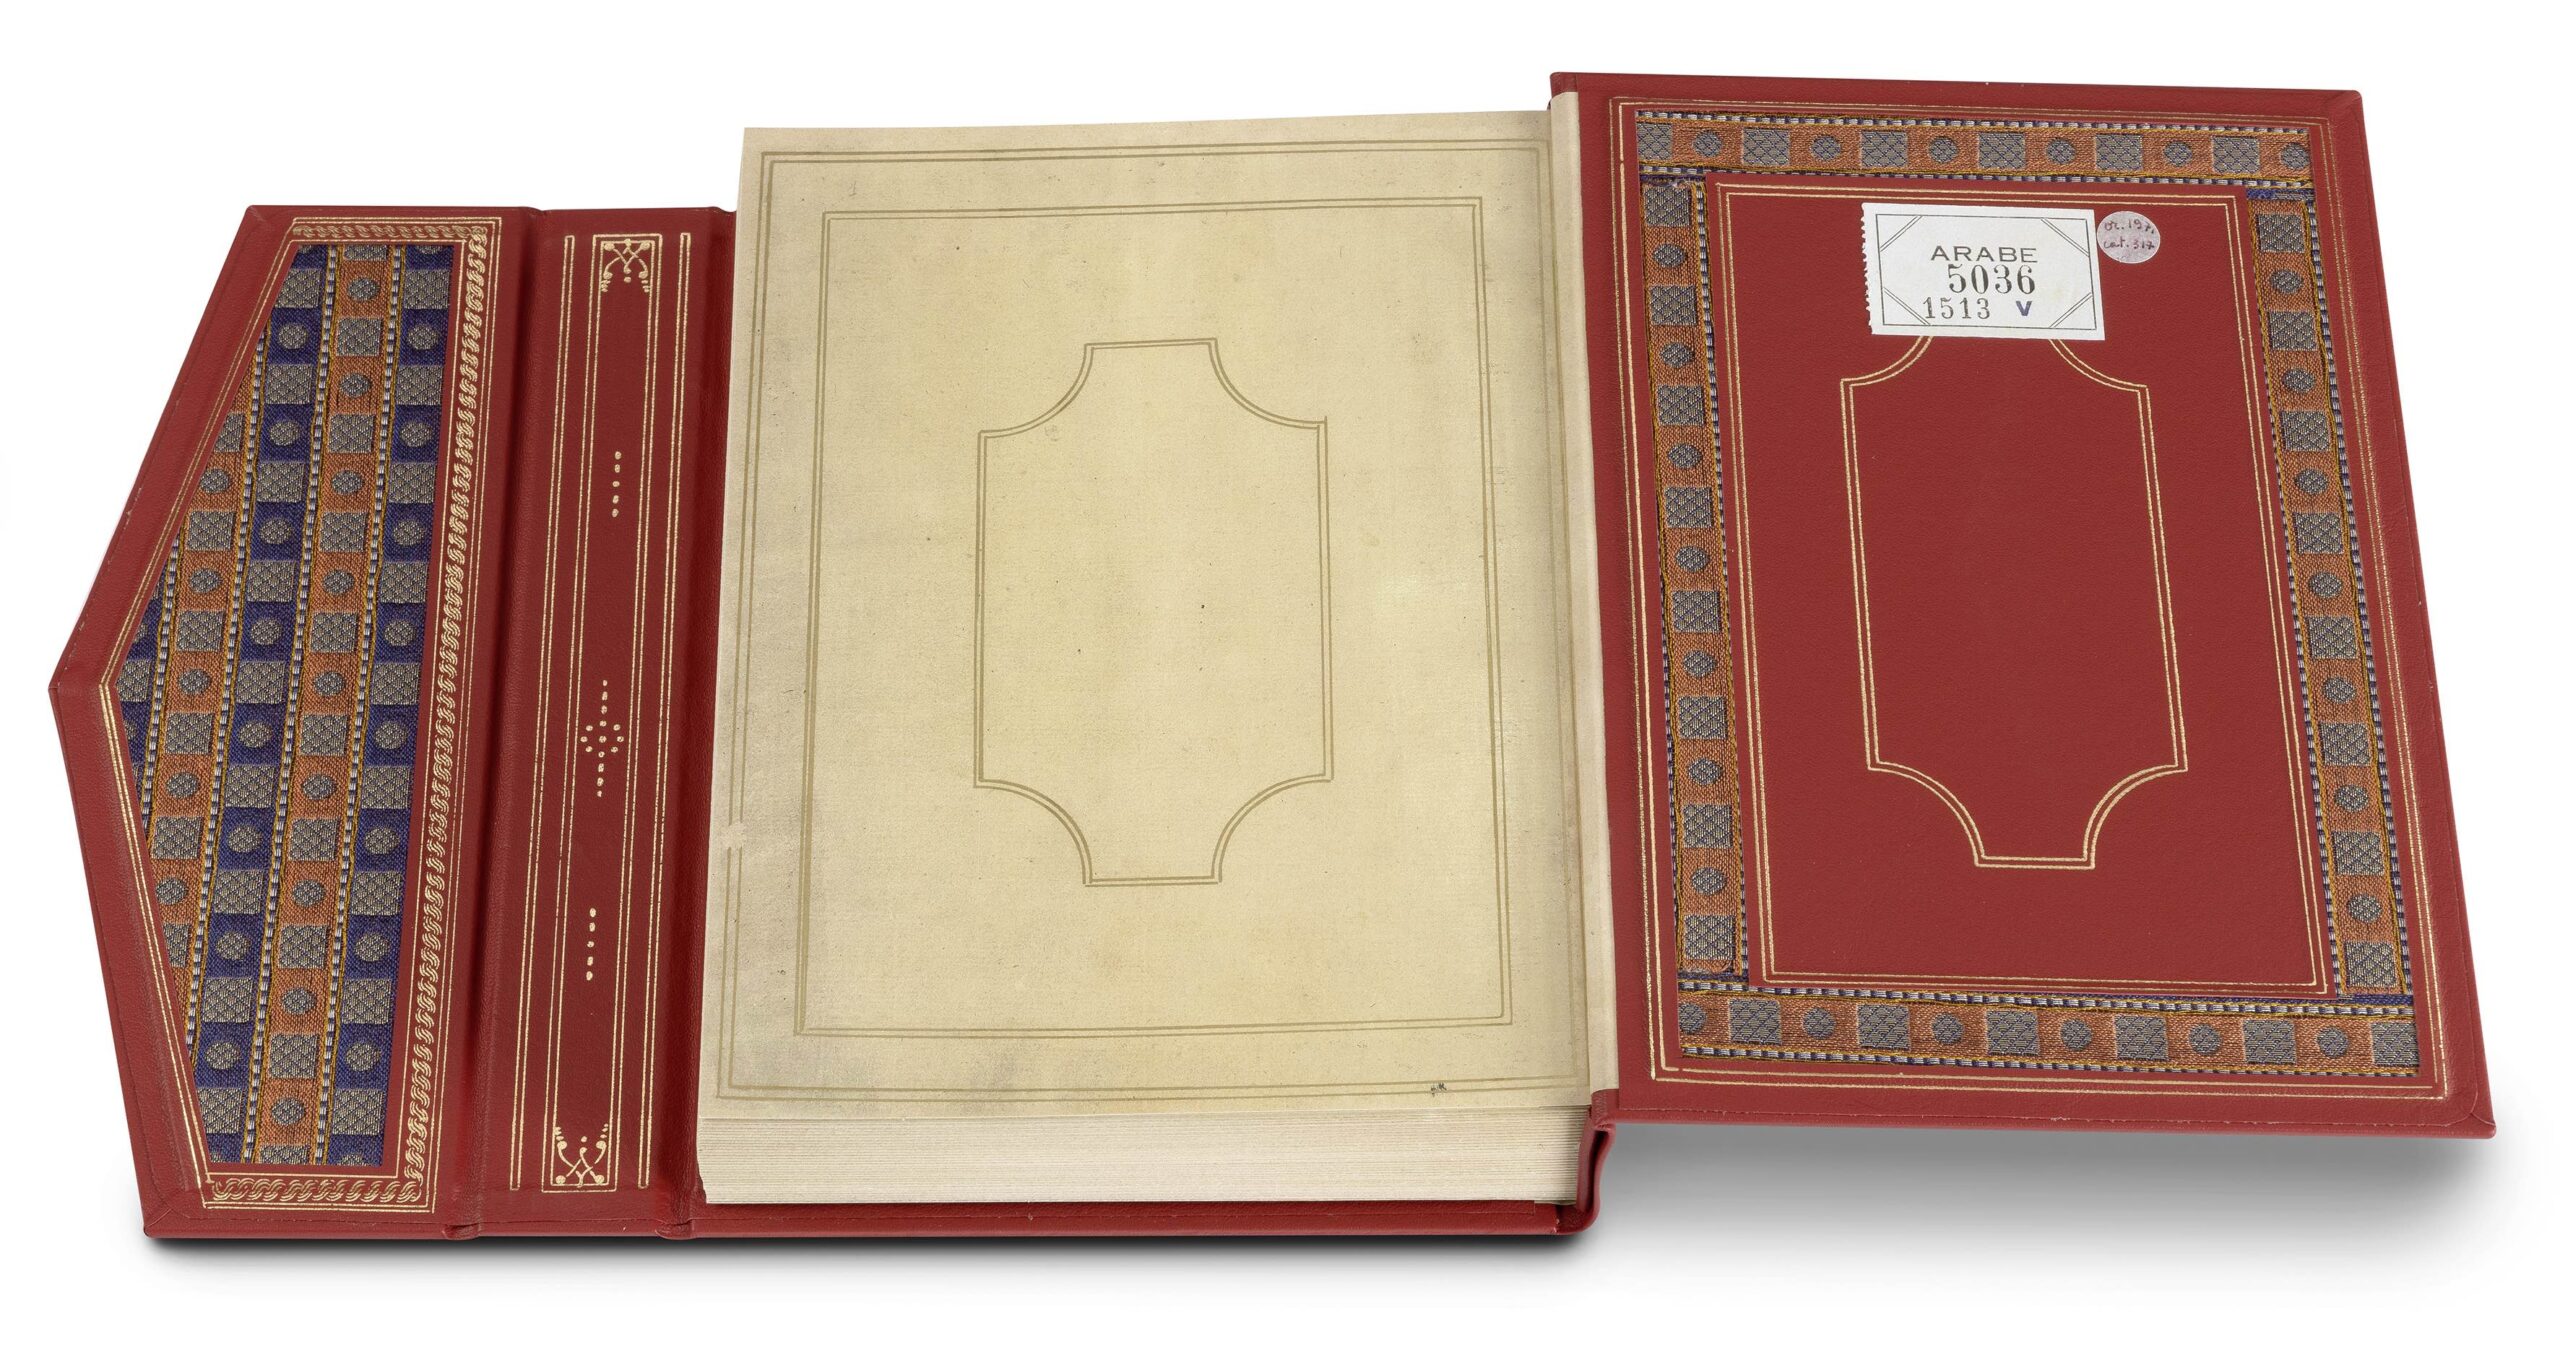 Auf der ersten Seite aufgeschlagenes Faksimile-Ausgabe des Ulugh Begs. Es zeigt den roten Buchrücken mit der Signatur Arabe 5036.